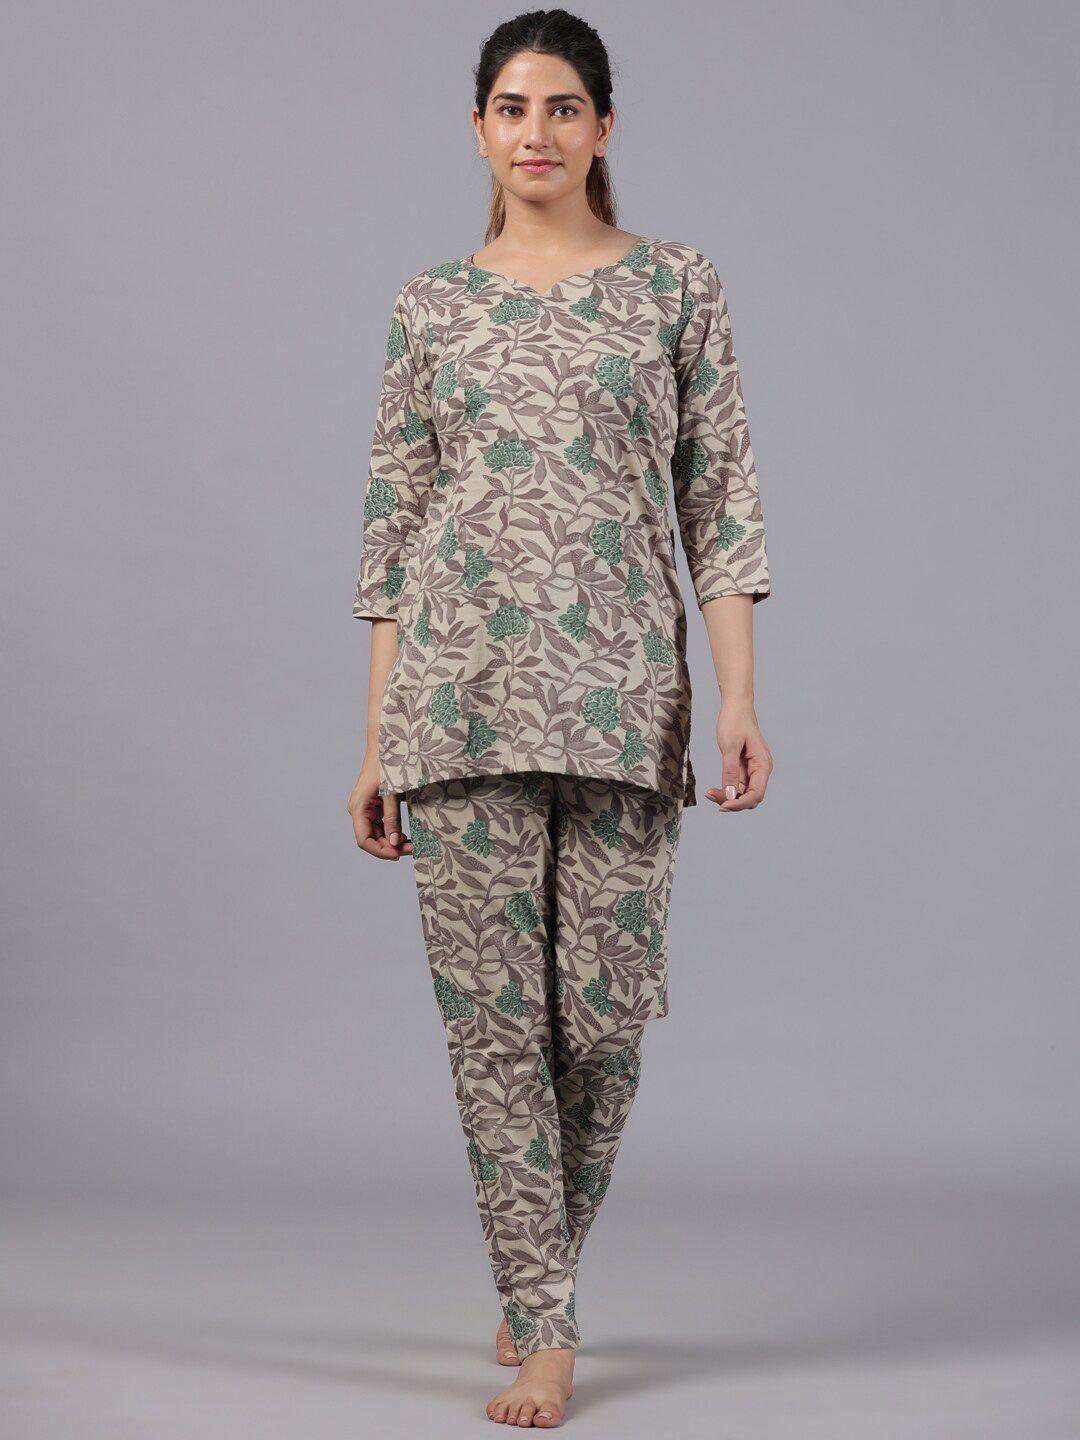 parchhai floral printed v-neck pure cotton night suit